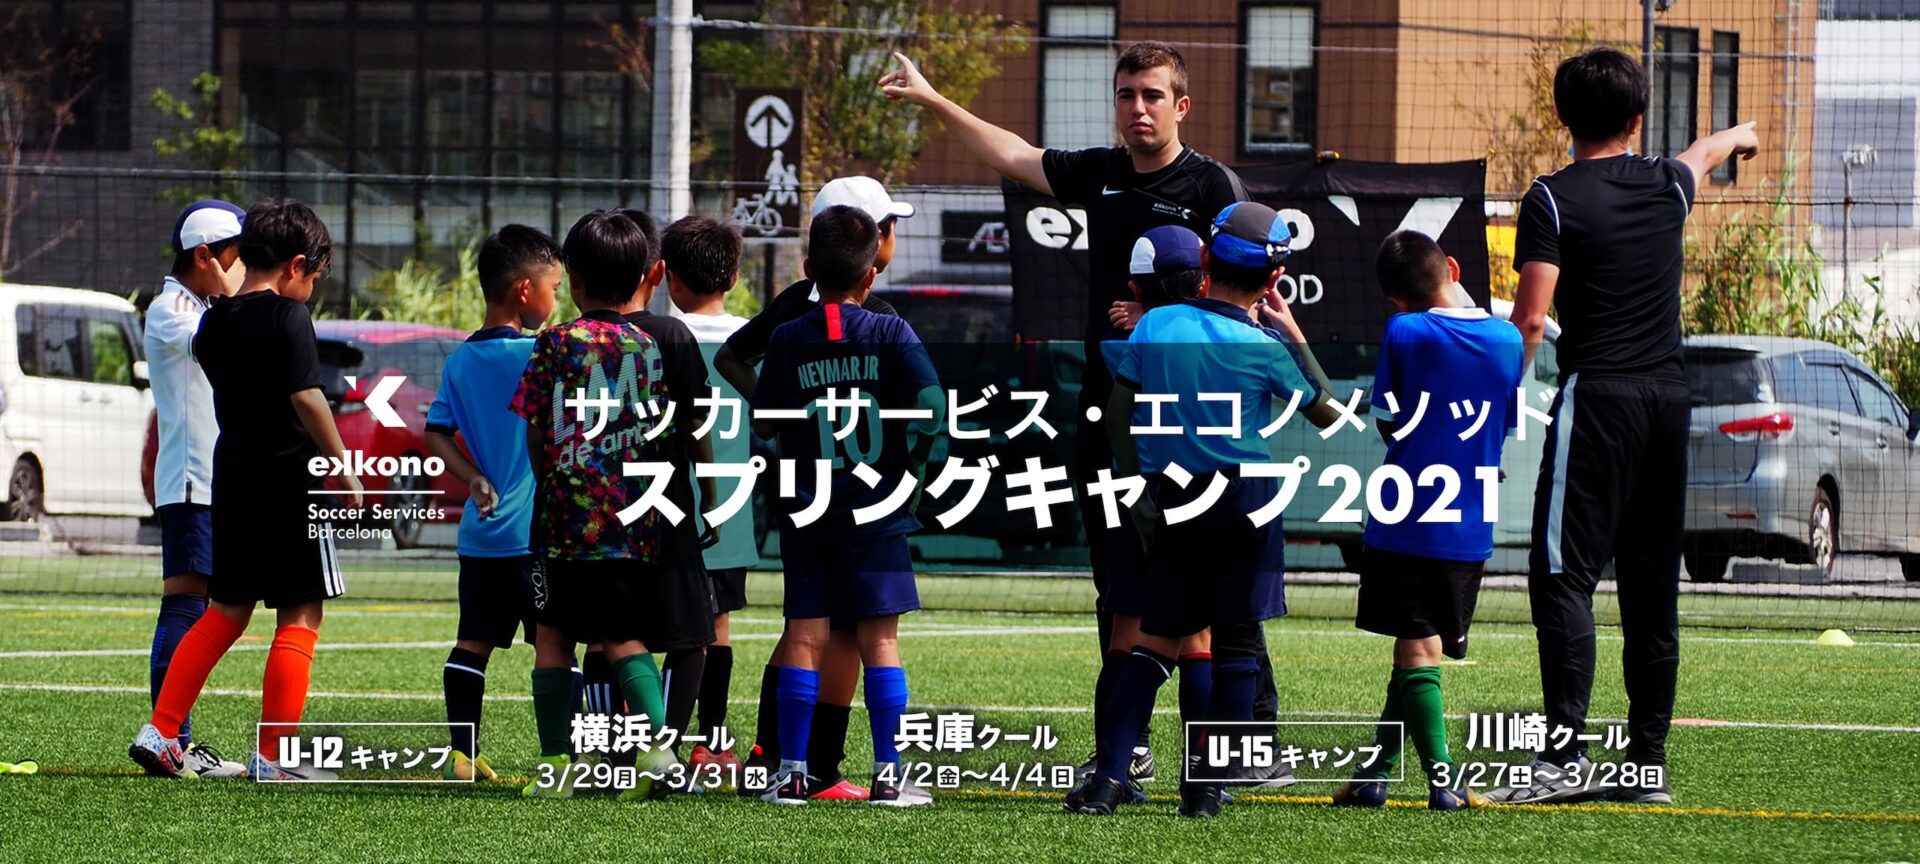 関西 関東3ヵ所で実施 エコノメソッドスプリングキャンプ21申込み受付開始 3 4月開催 ジュニアサッカーnews